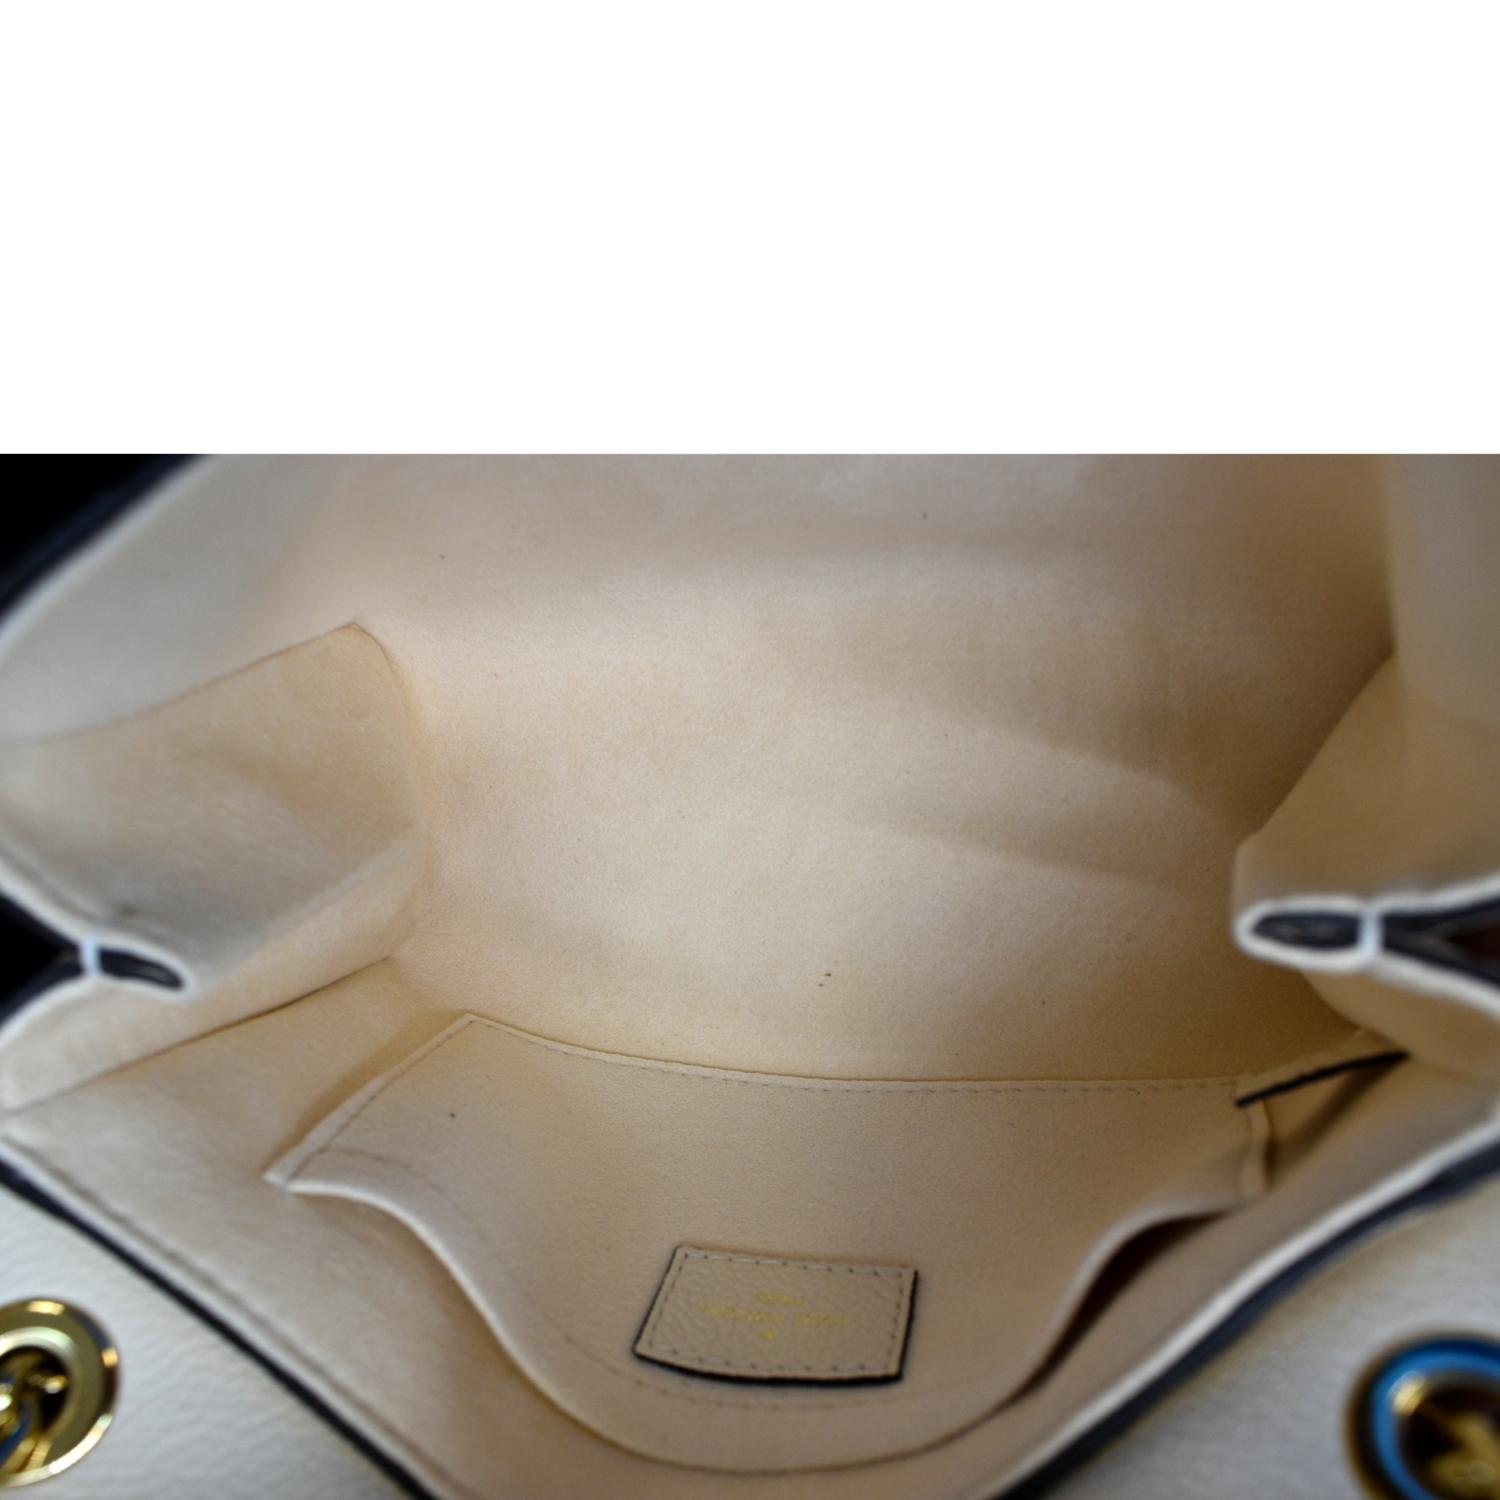 Louis Vuitton Vavin BB Monogram Leather Shoulder Bag